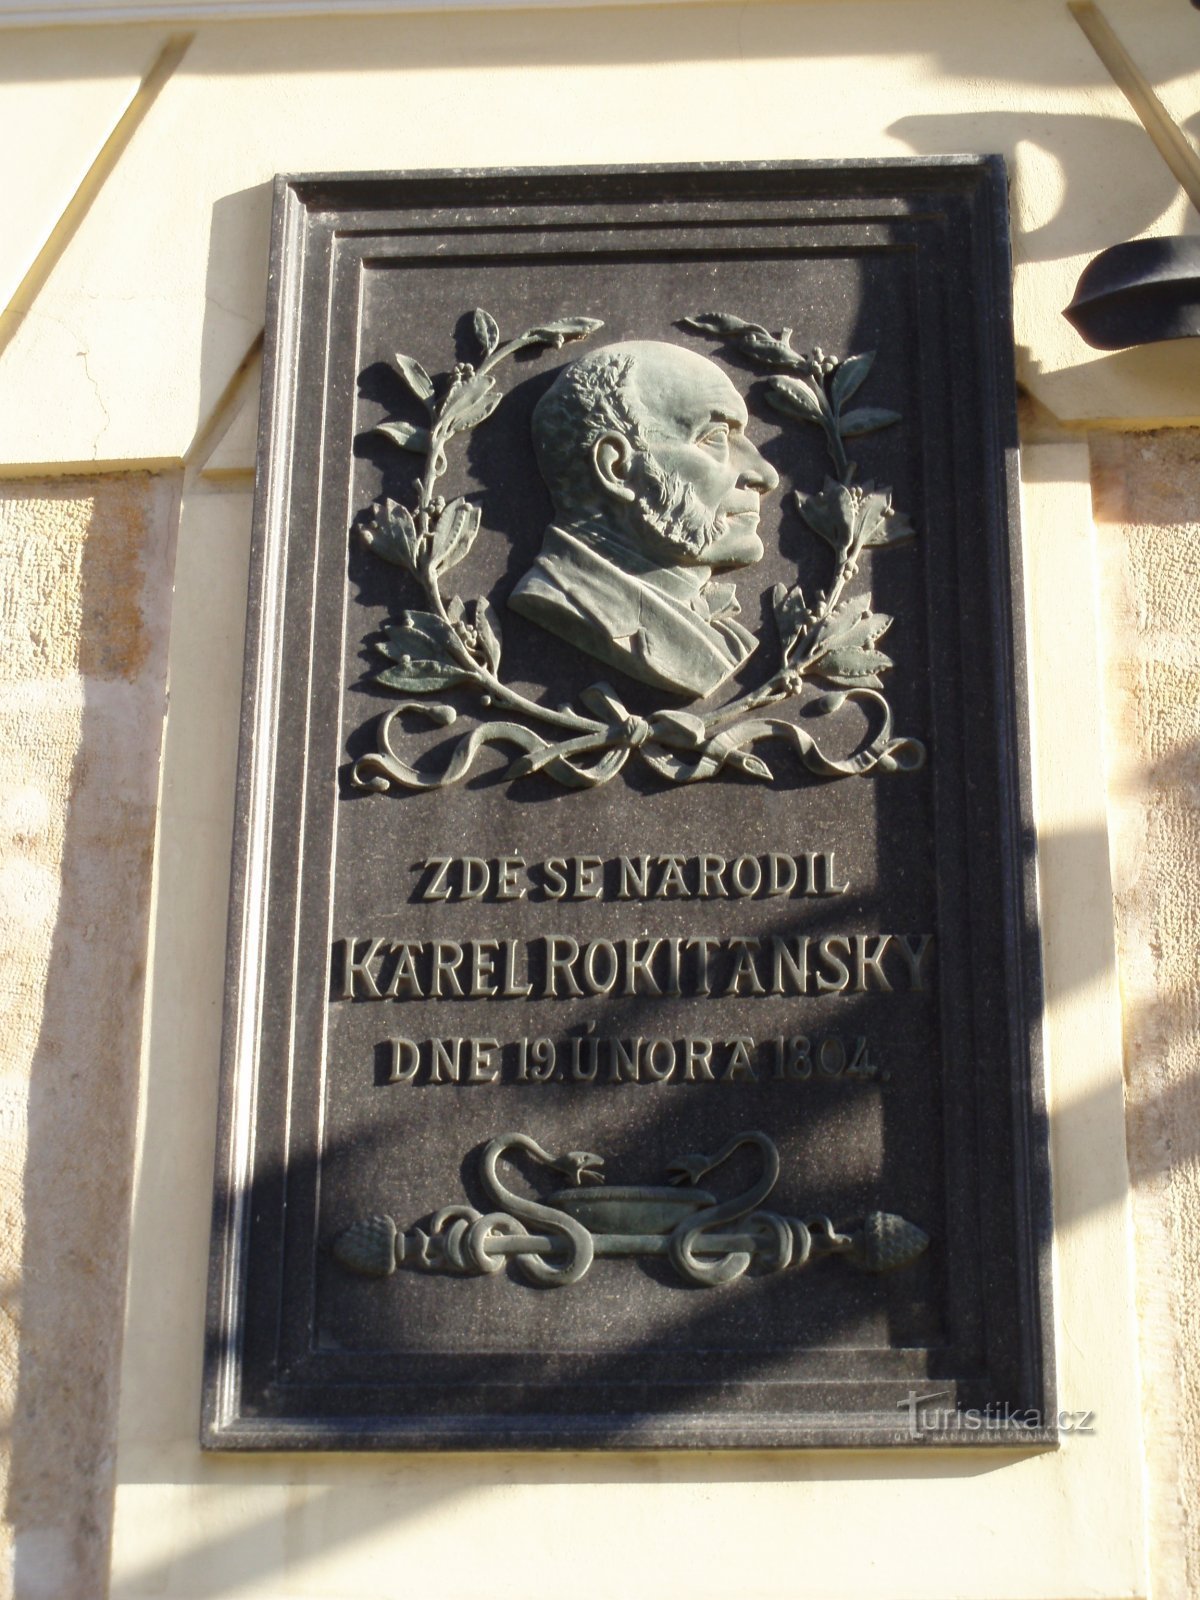 Tấm bảng tưởng niệm Karel Rokitanský (Hradec Králové, ngày 10.4.2010 tháng XNUMX năm XNUMX)